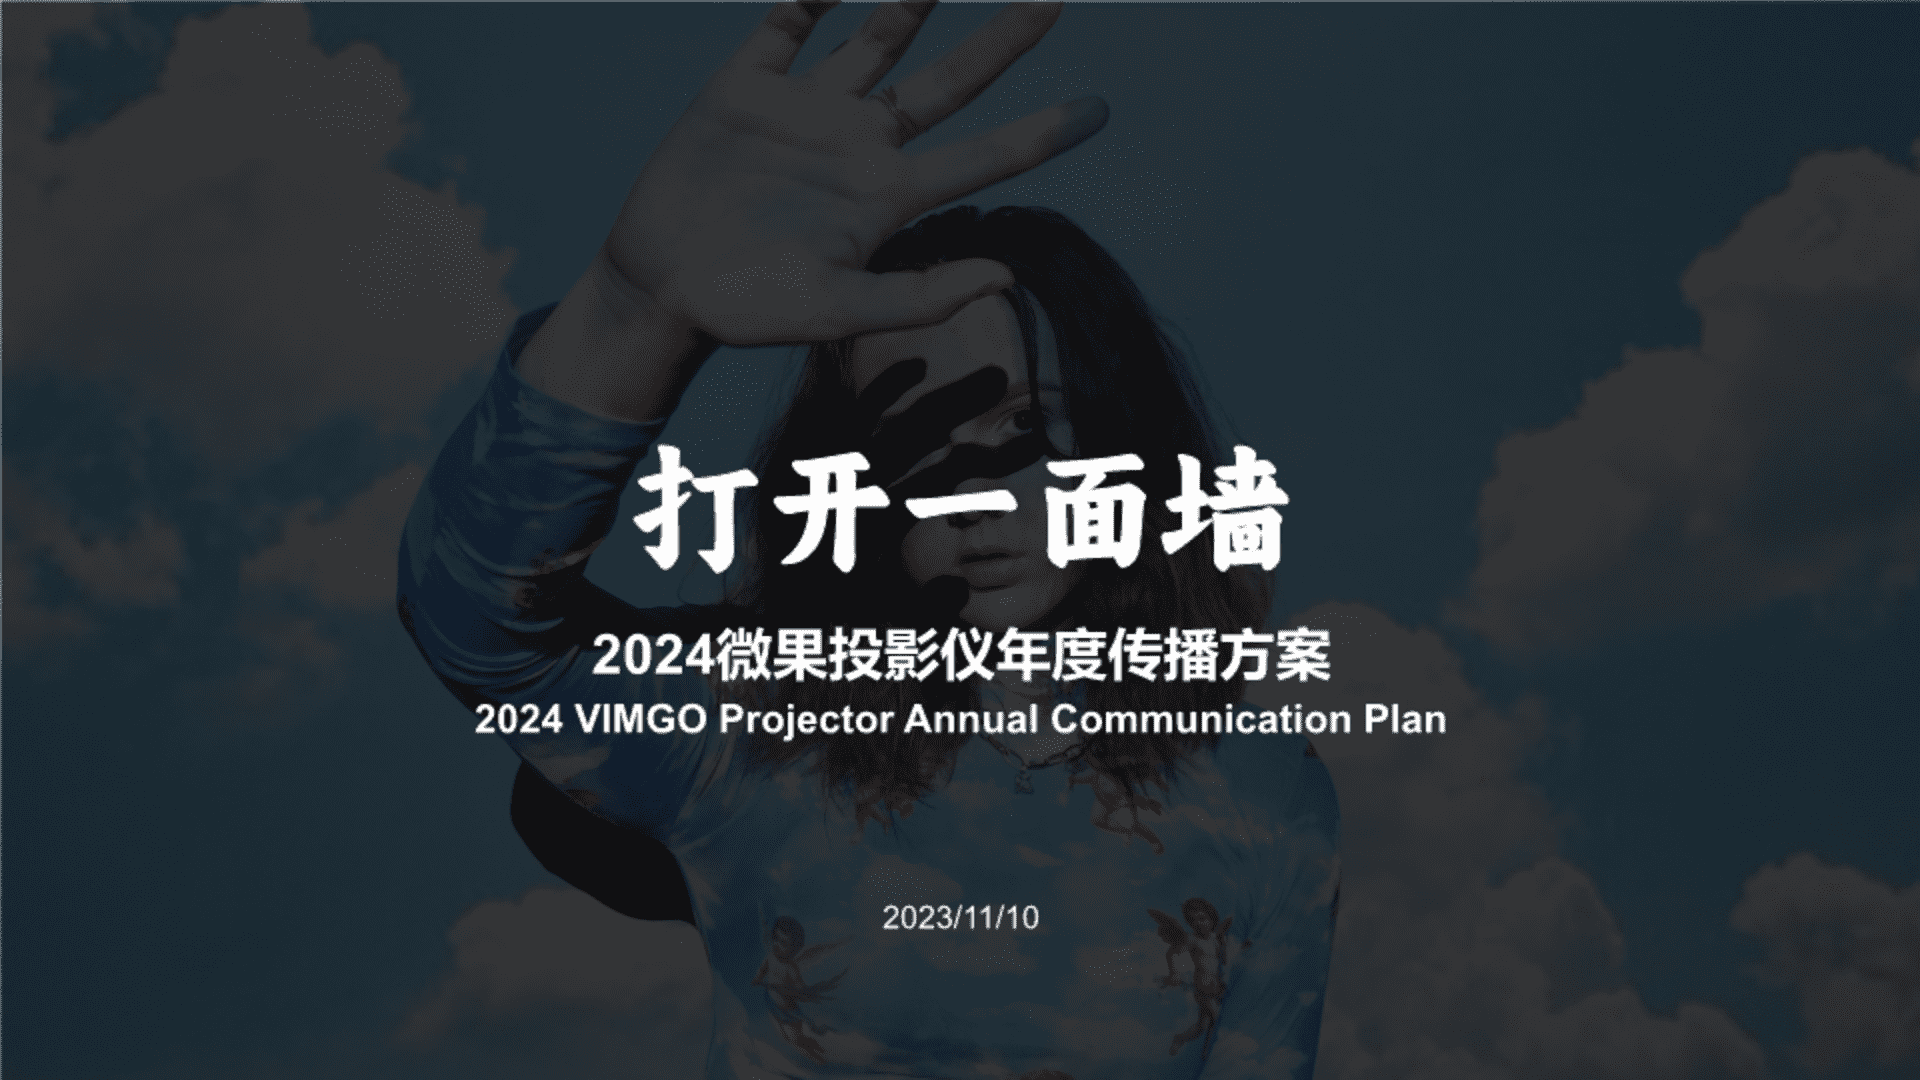 2024微果投影仪年度传播方案